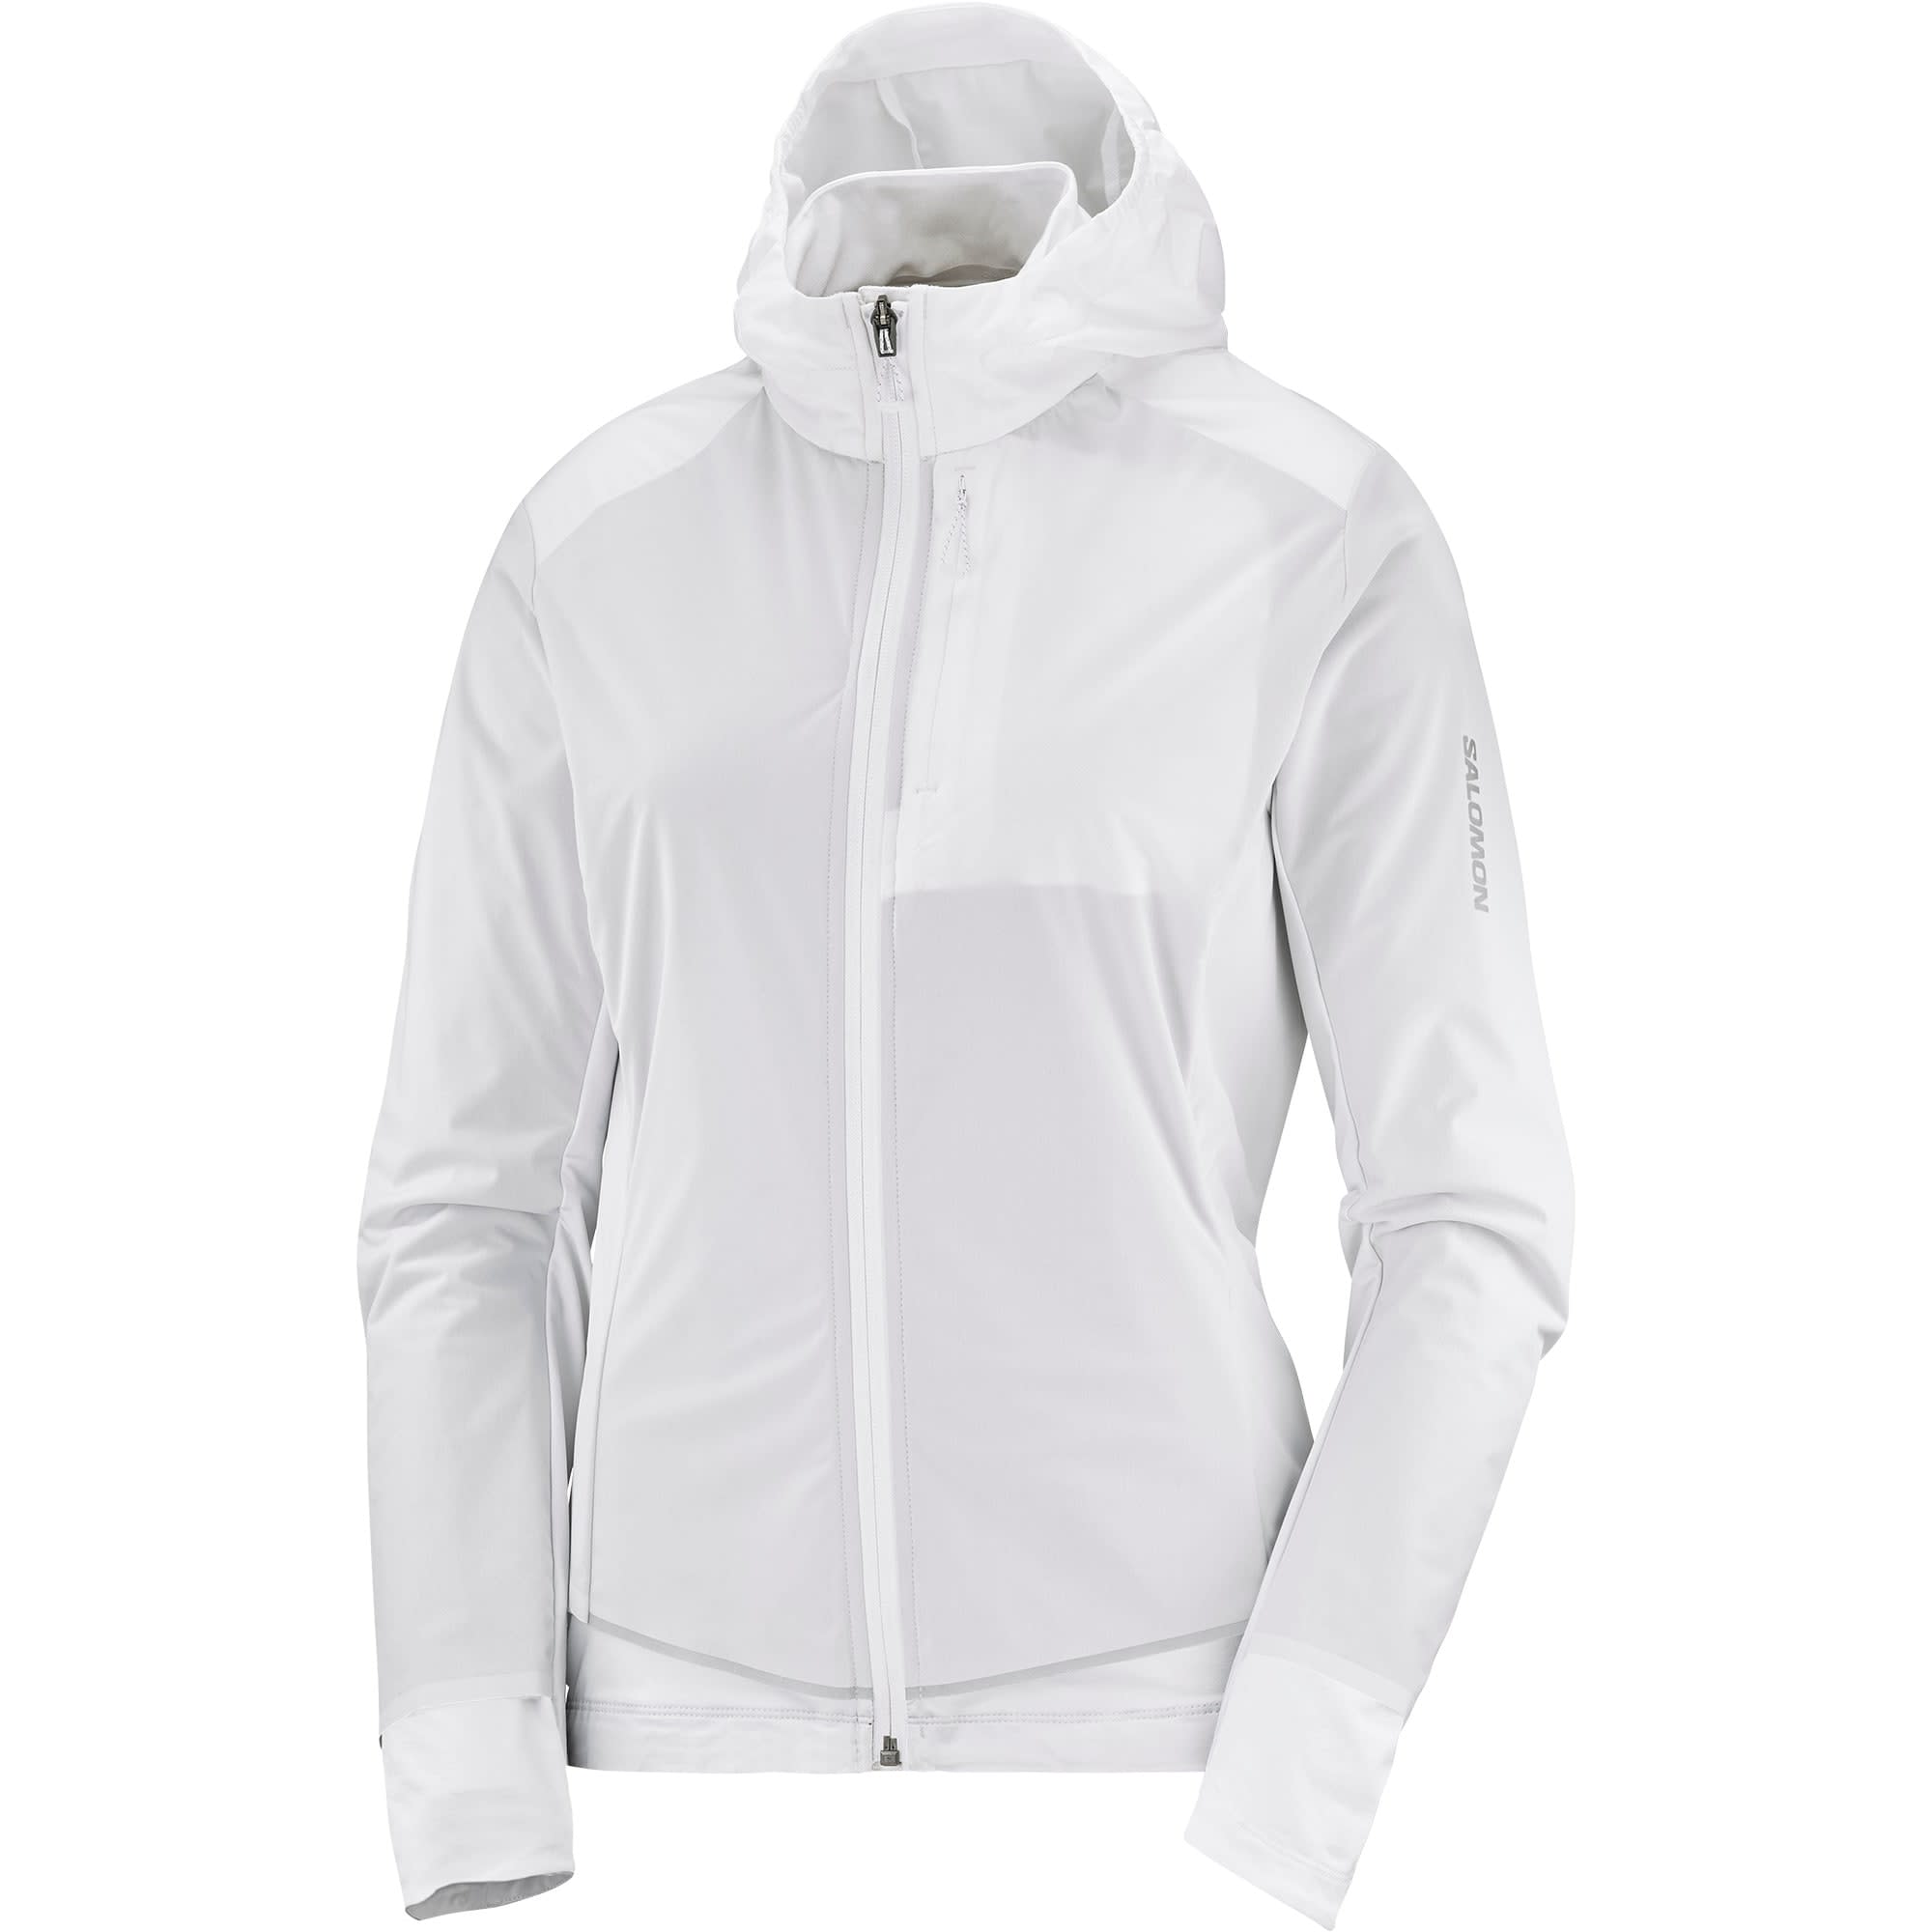 Salomon Women’s Light Shell Jacket WHITE/